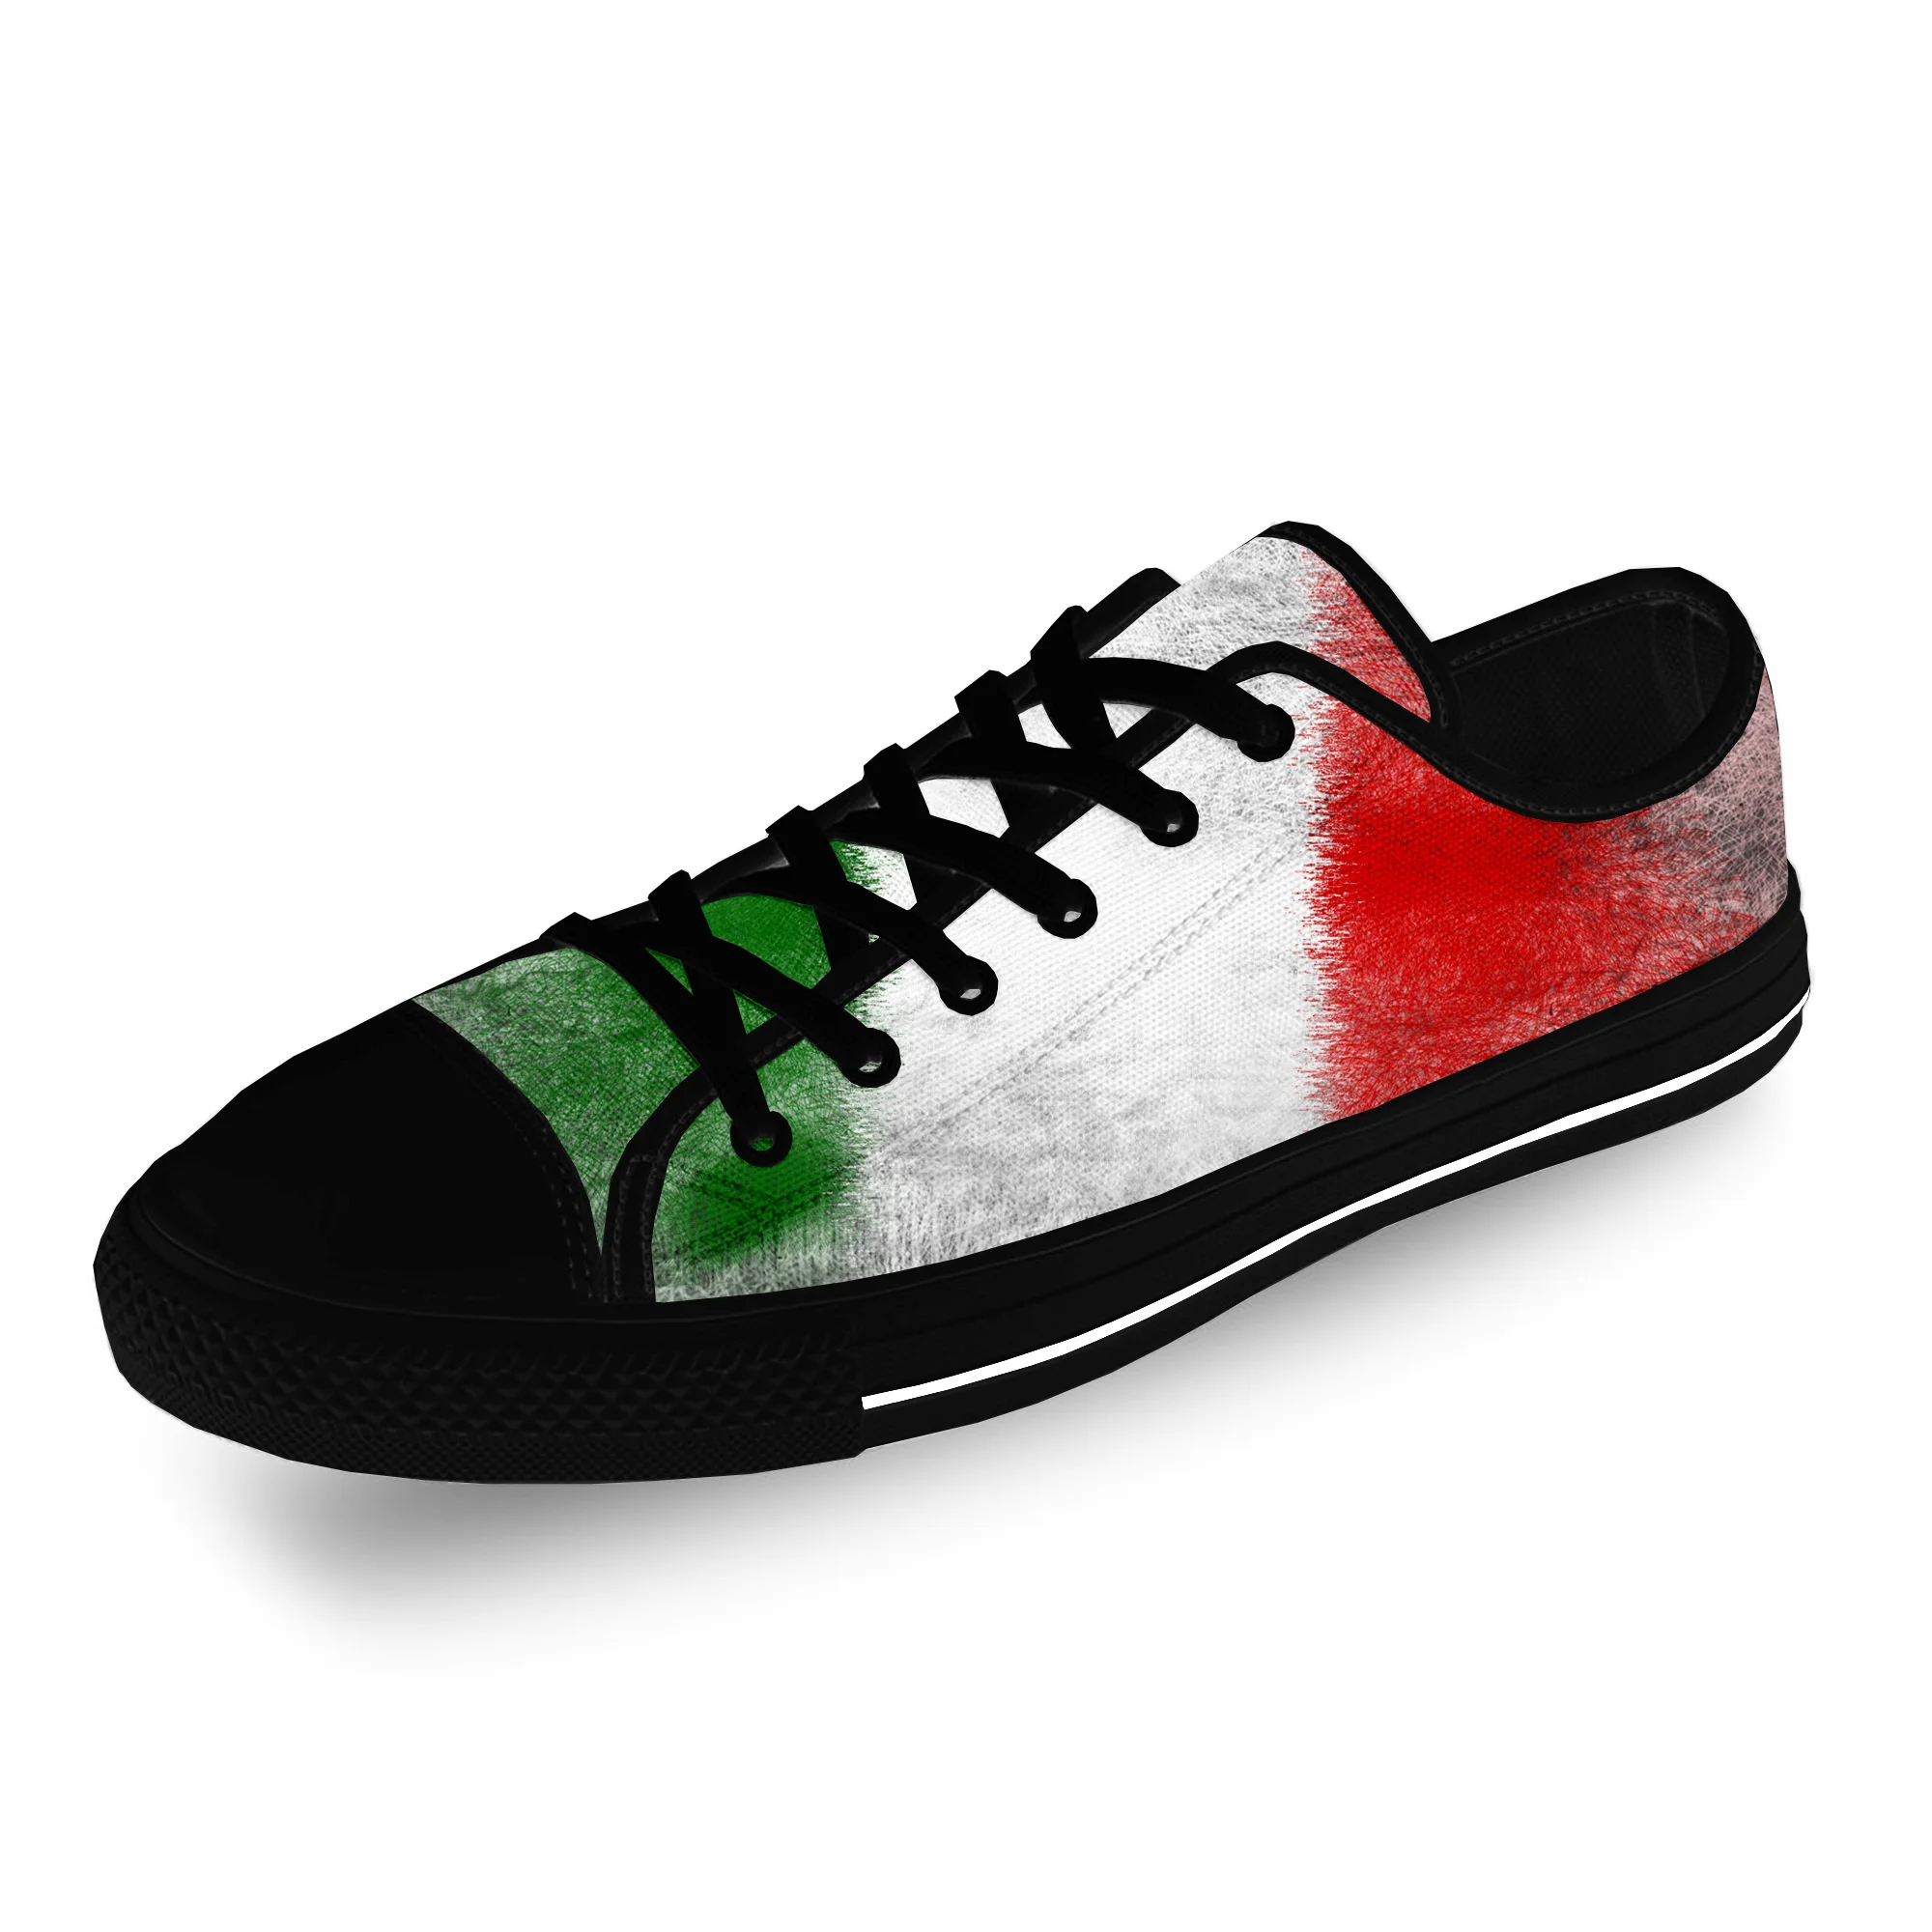 

Текстильные низкие кроссовки для мужчин и женщин, смешная повседневная обувь с итальянским флагом Италии, патриотической тканью и 3D принтом, дышащие